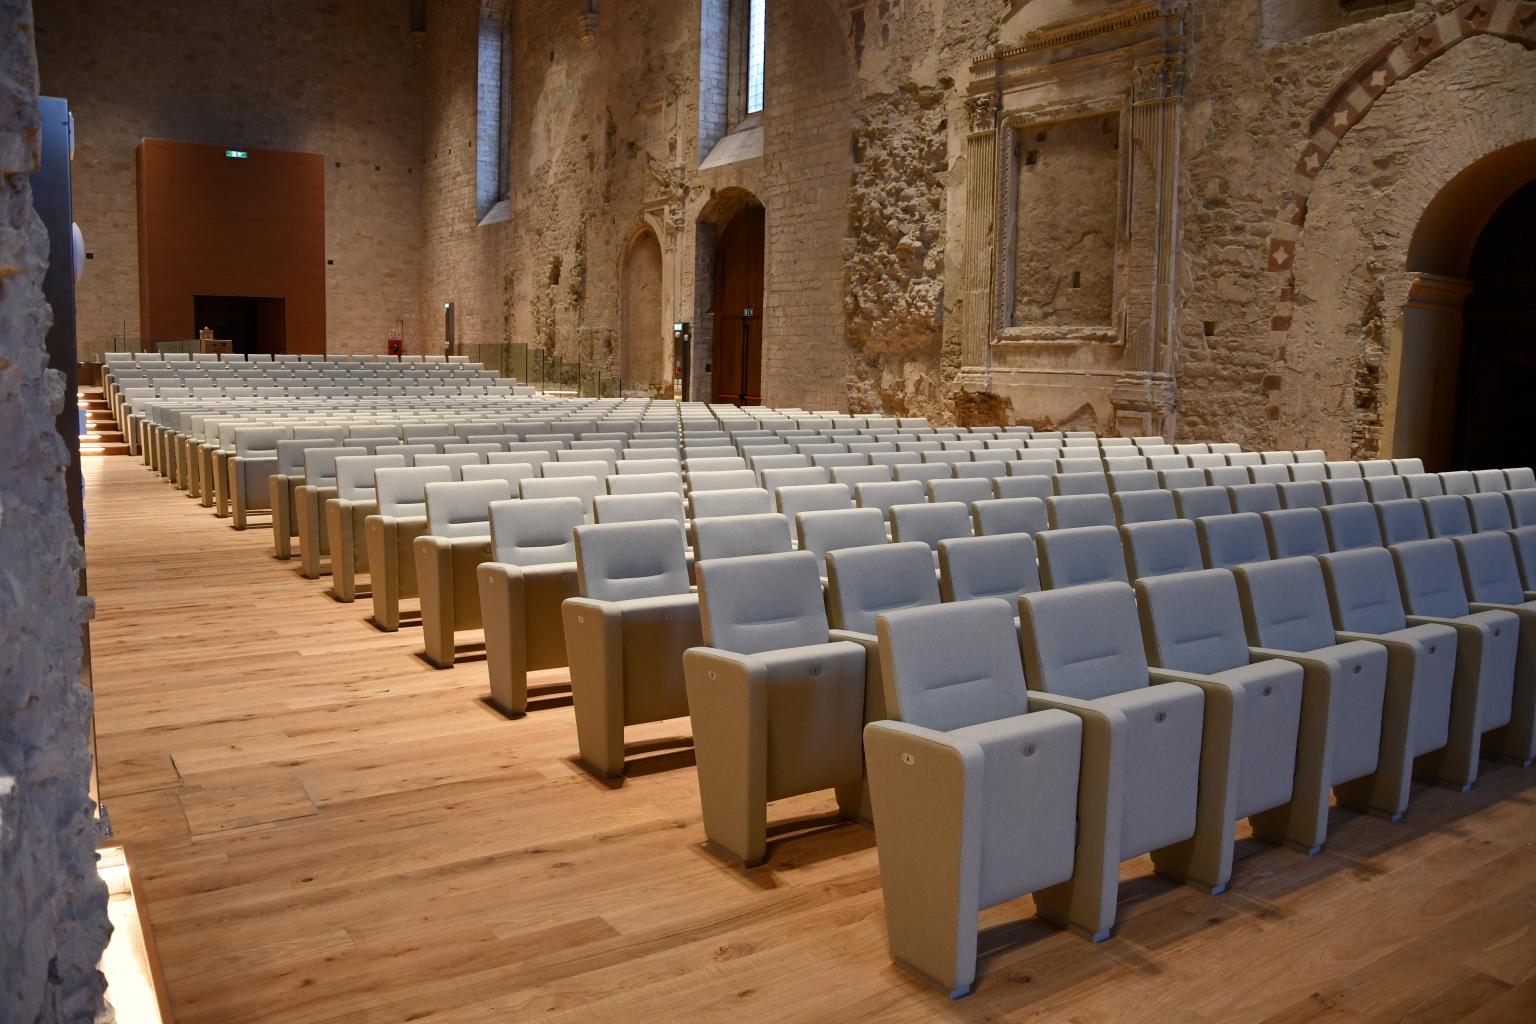 Auditorium of San Francesco al Prato, Perugia, Italy